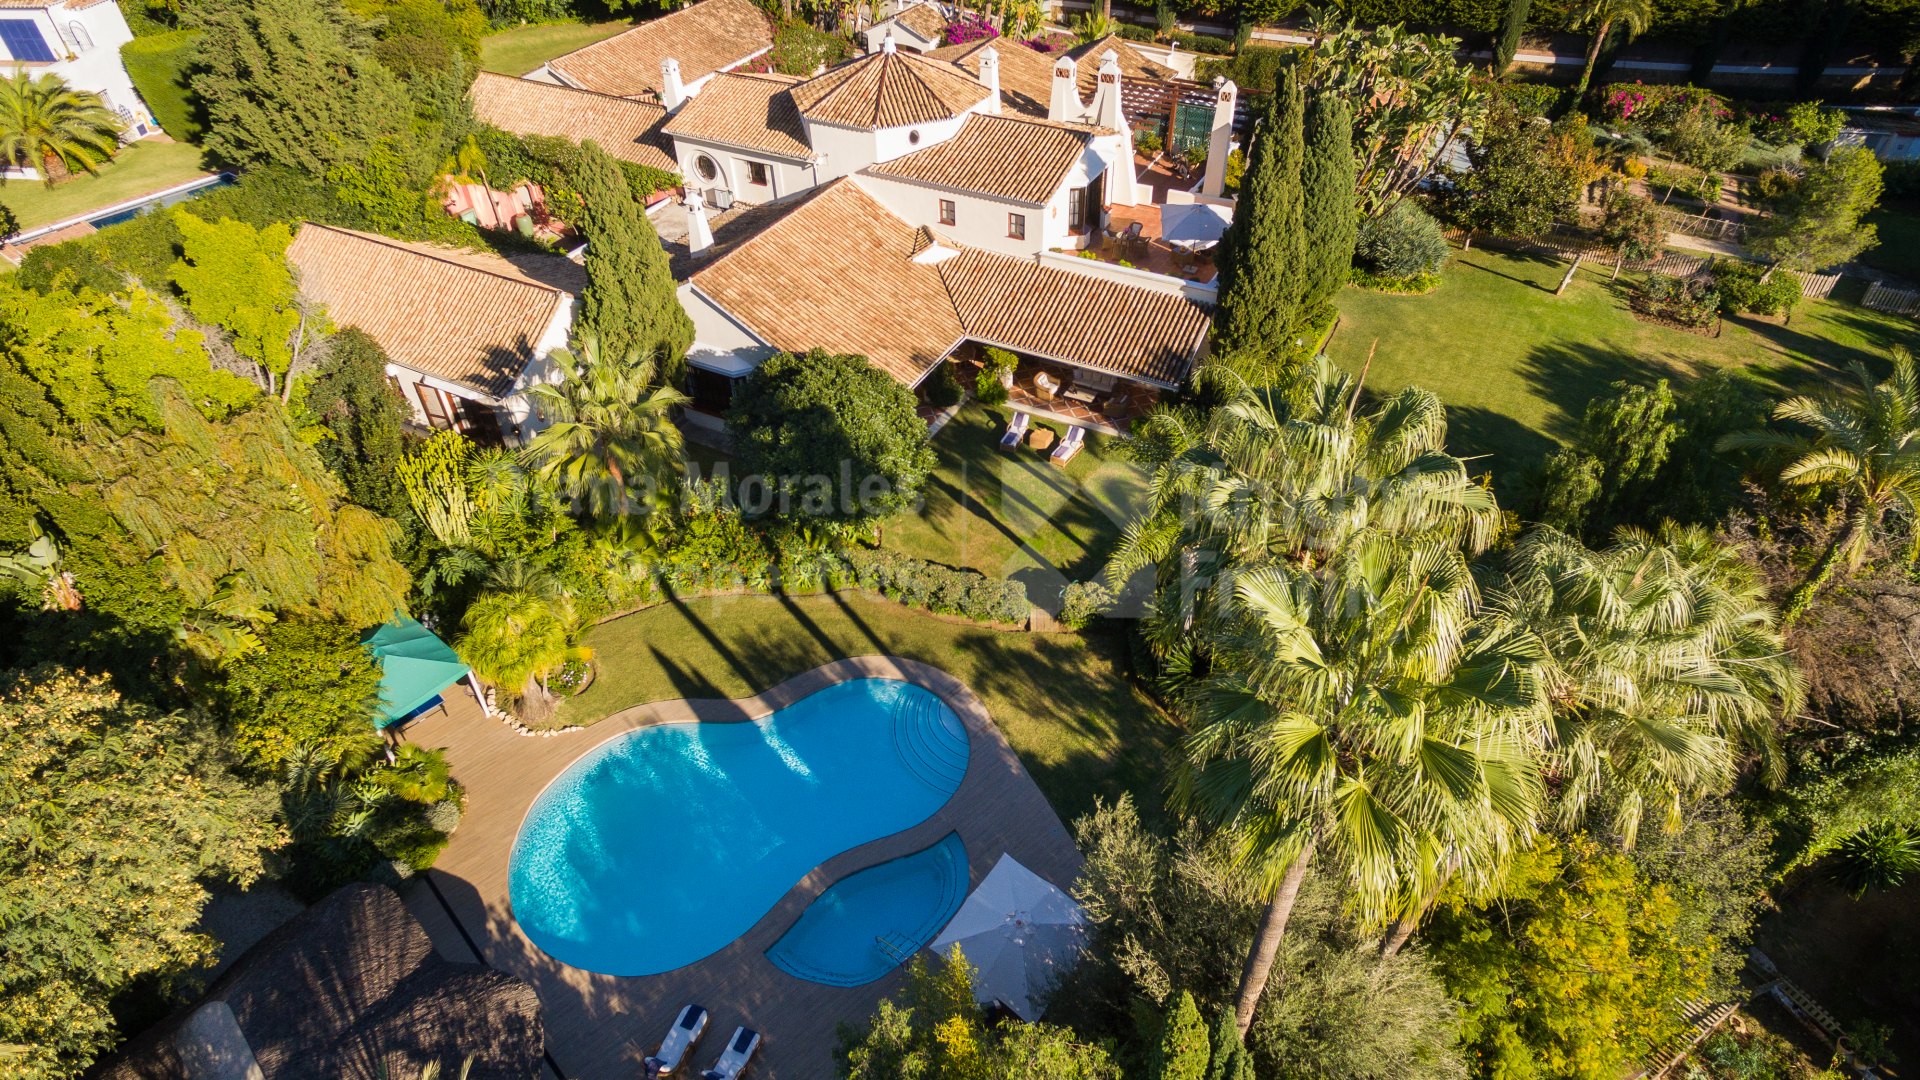 Marbella Hill Club, Villa de diez dormitorios en alquiler con encanto andaluz